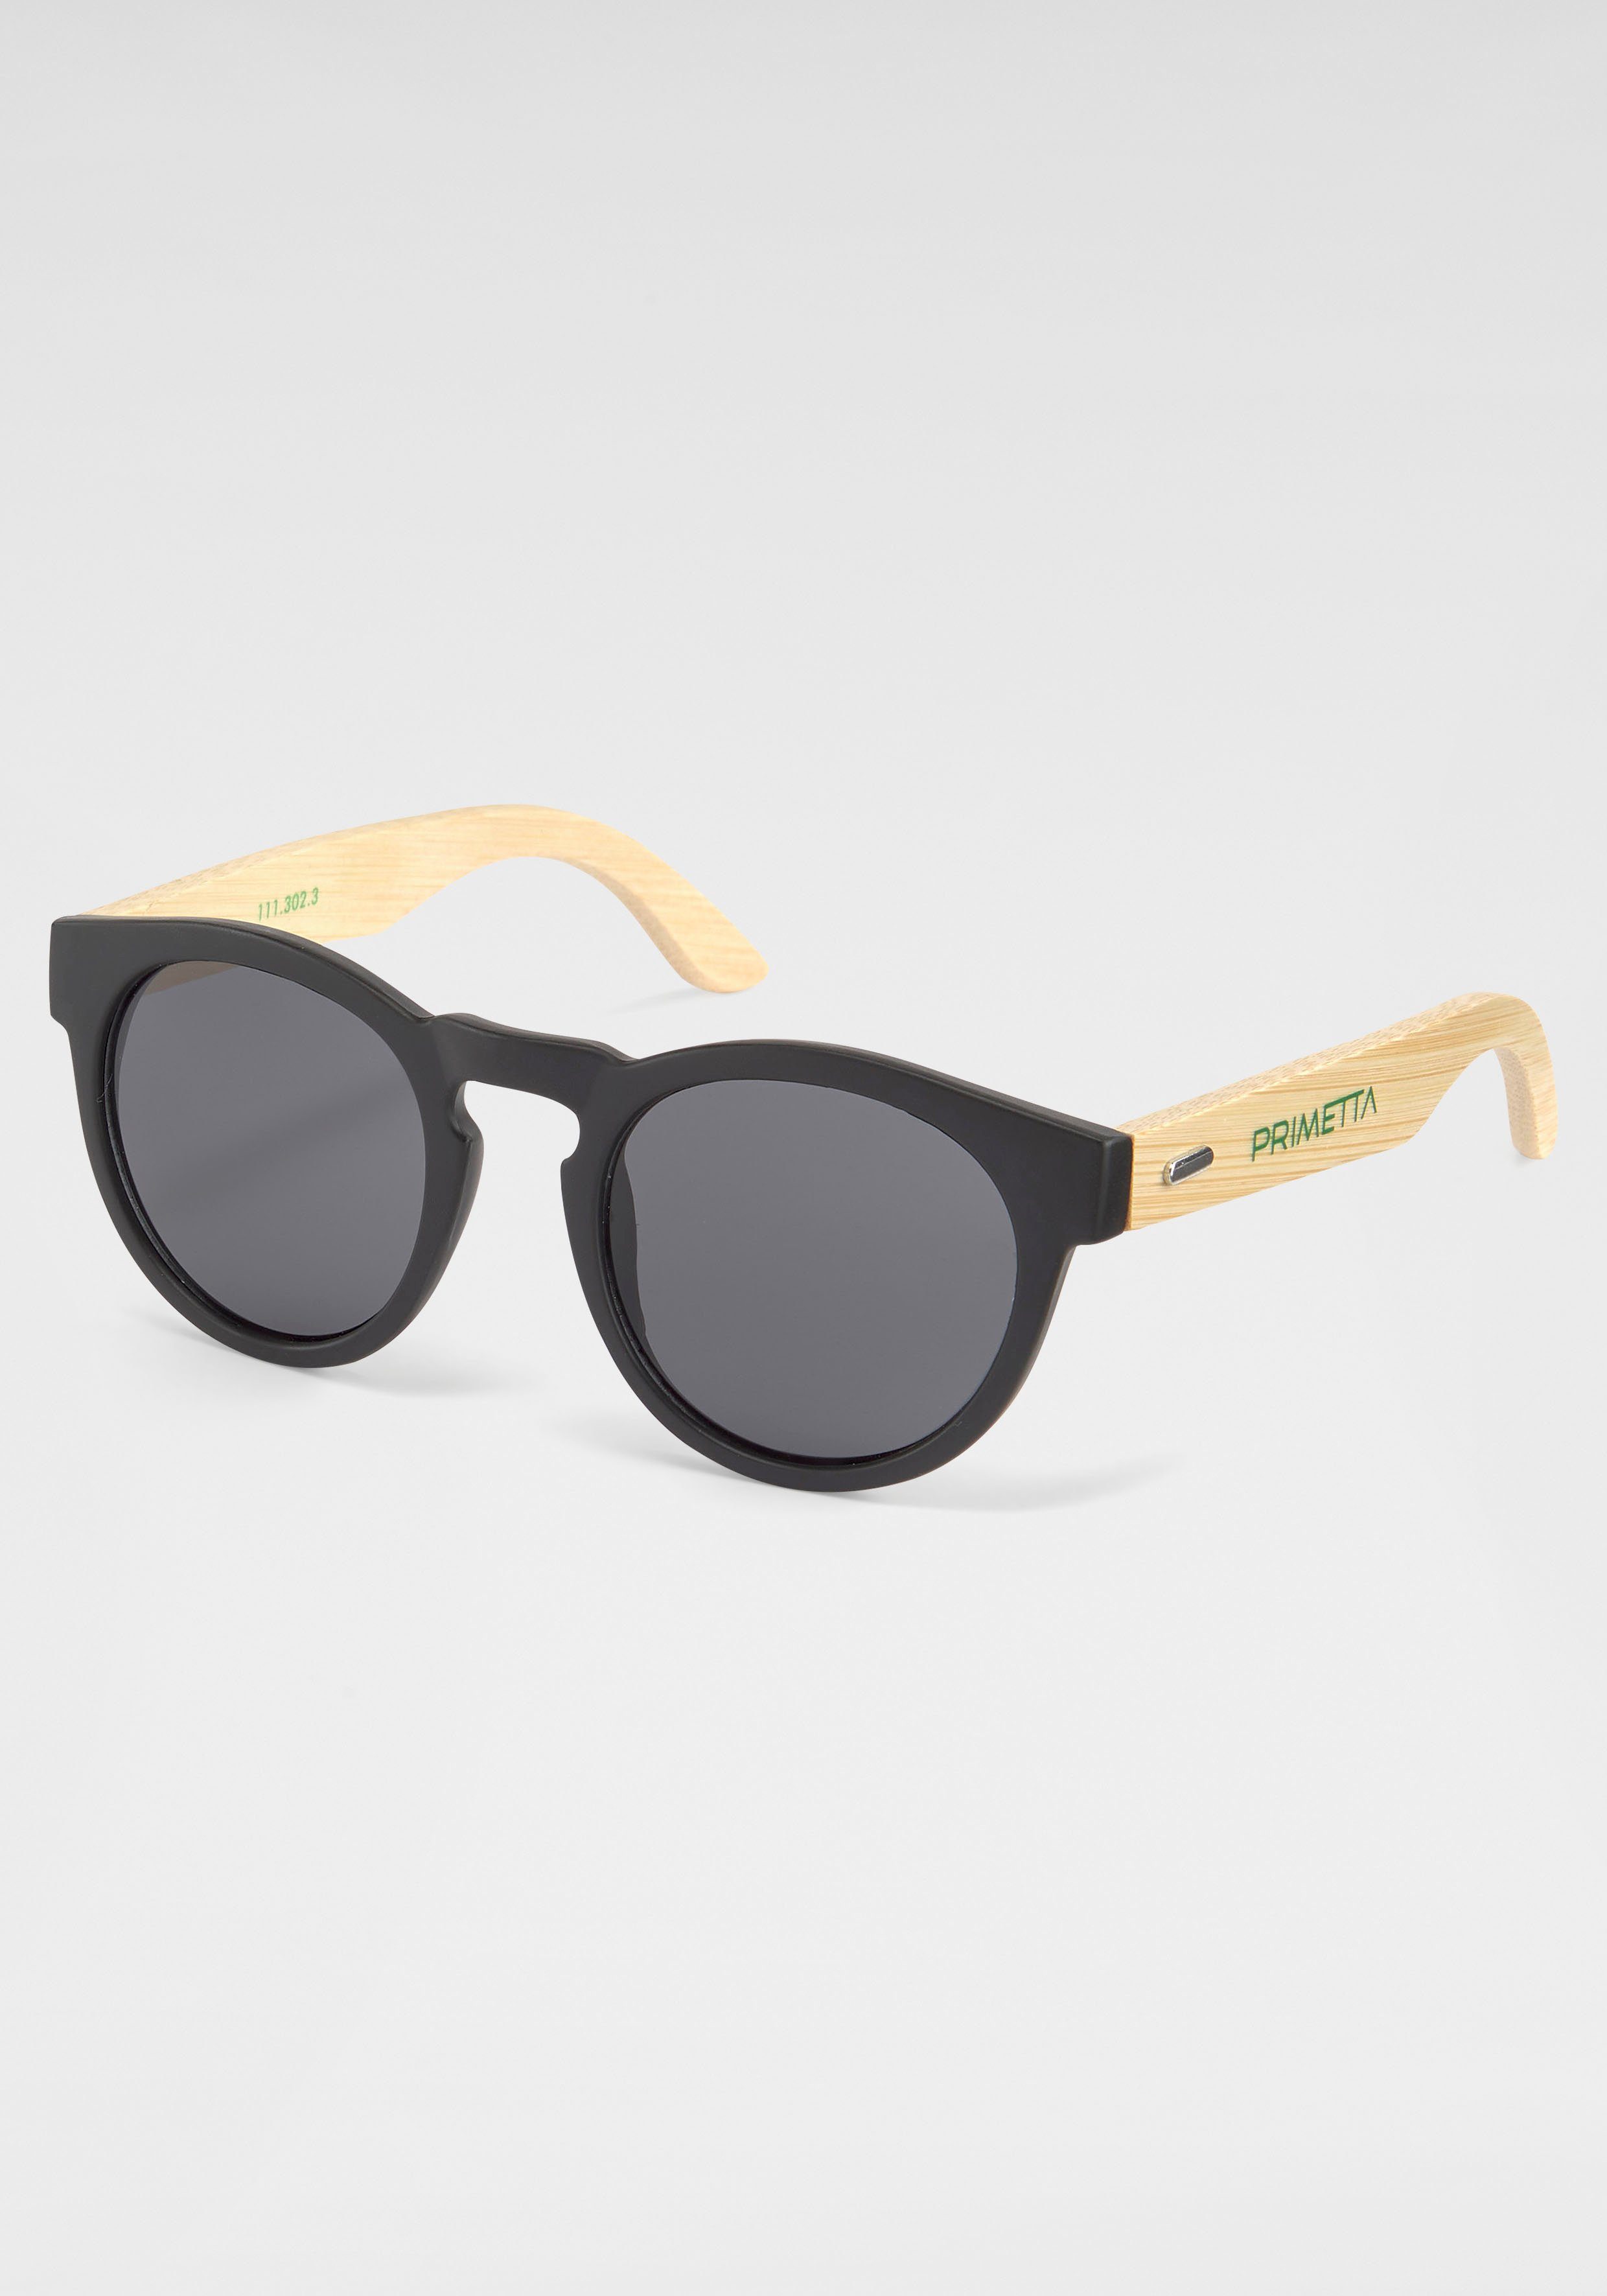 PRIMETTA Eyewear schwarz Sonnenbrille